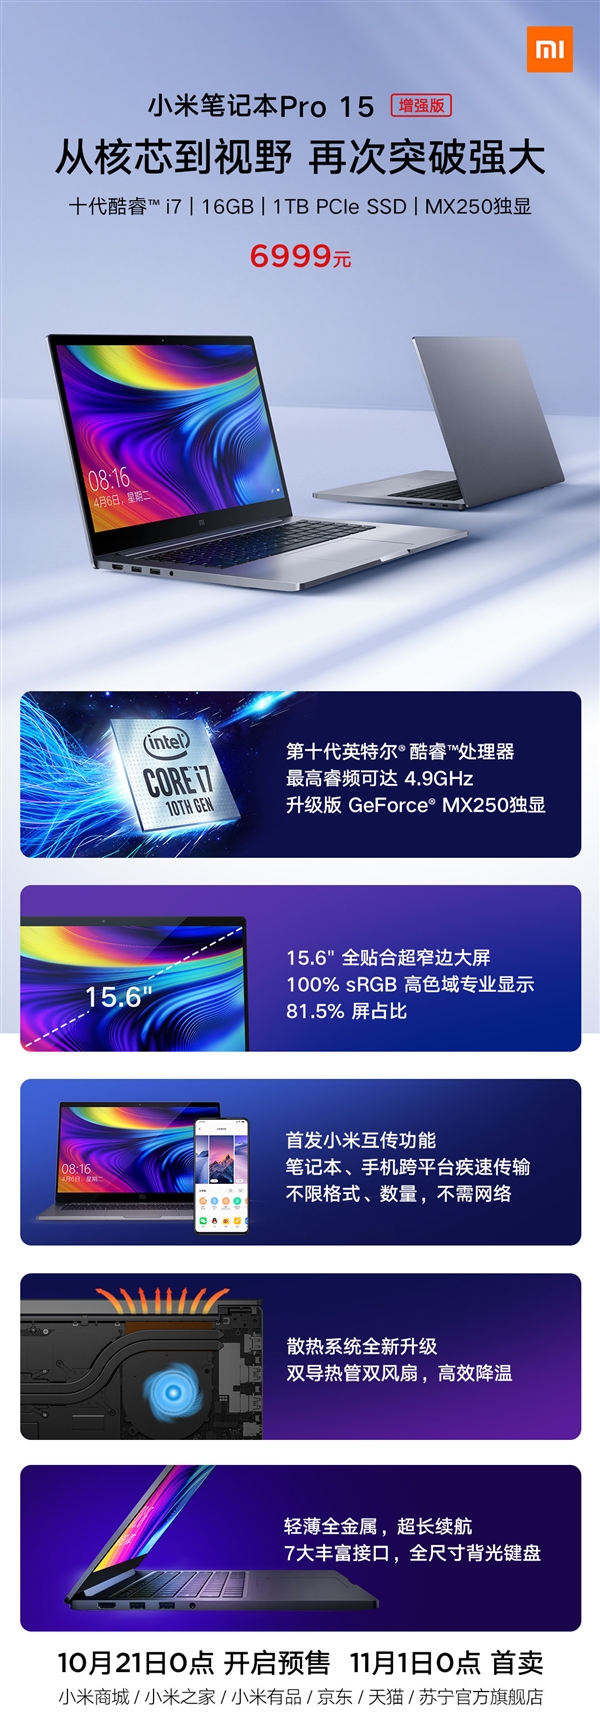 Intel Core i7-10510U, GeForce MX250, 16 ГБ ОЗУ и SSD на 1 ТБ. Представлен ноутбук Xiaomi Mi Notebook Pro 15.6 Enhanced Edition